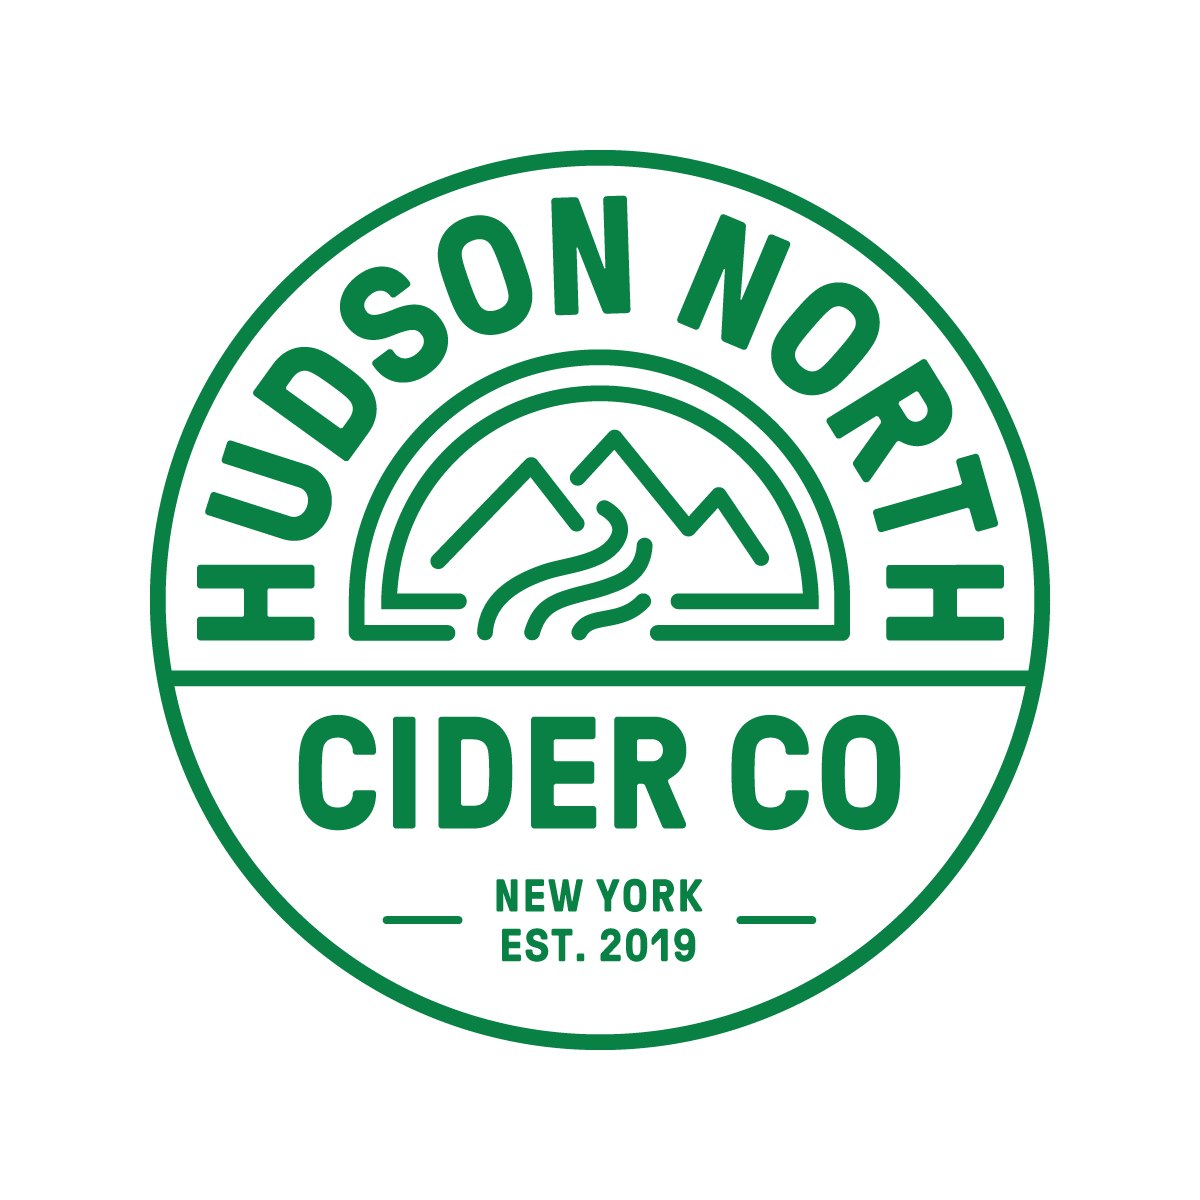 Hudson North Cider Co